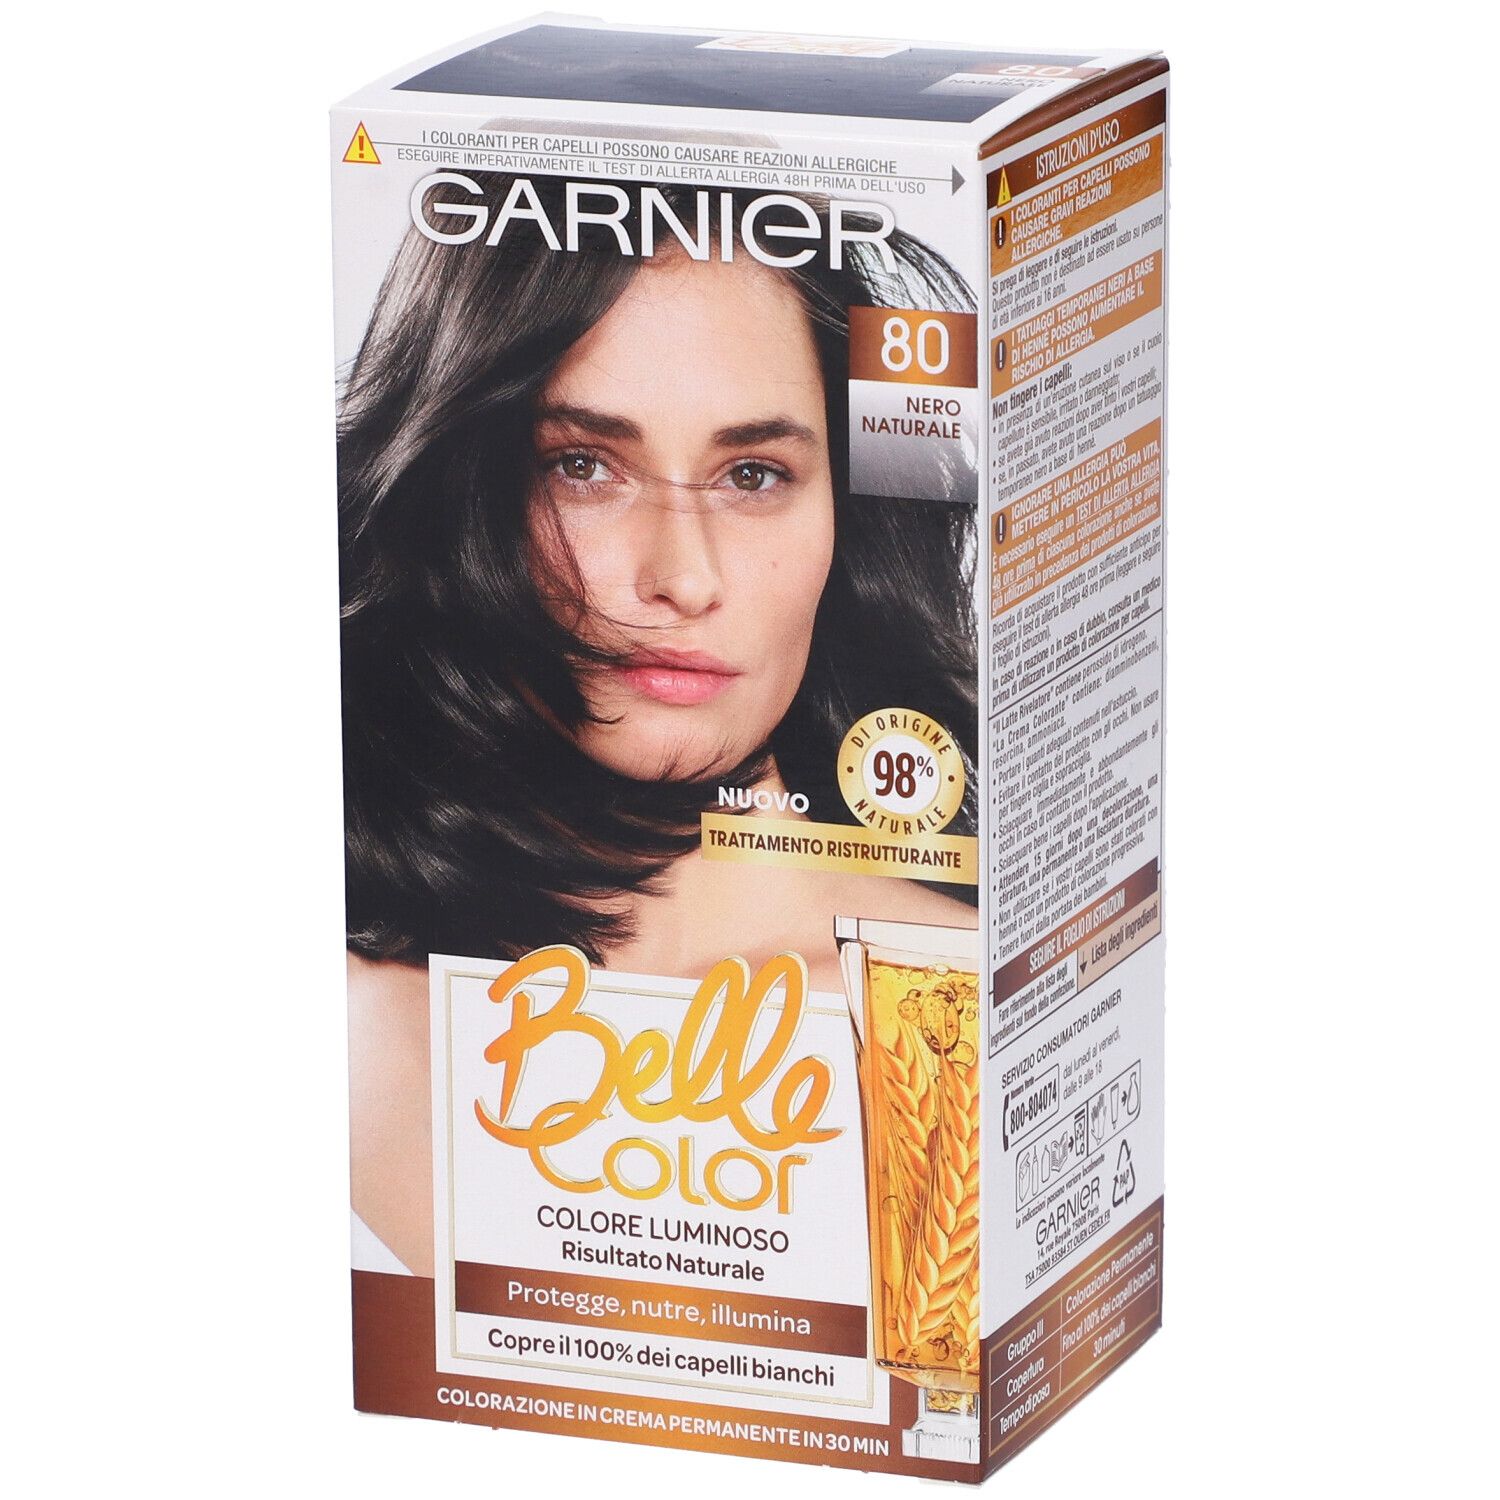 Image of Garnier Tinta Capelli Belle Color, Colore Luminoso e Riflessi Naturali, Copre il 100% dei capelli bianchi, Nero Naturale